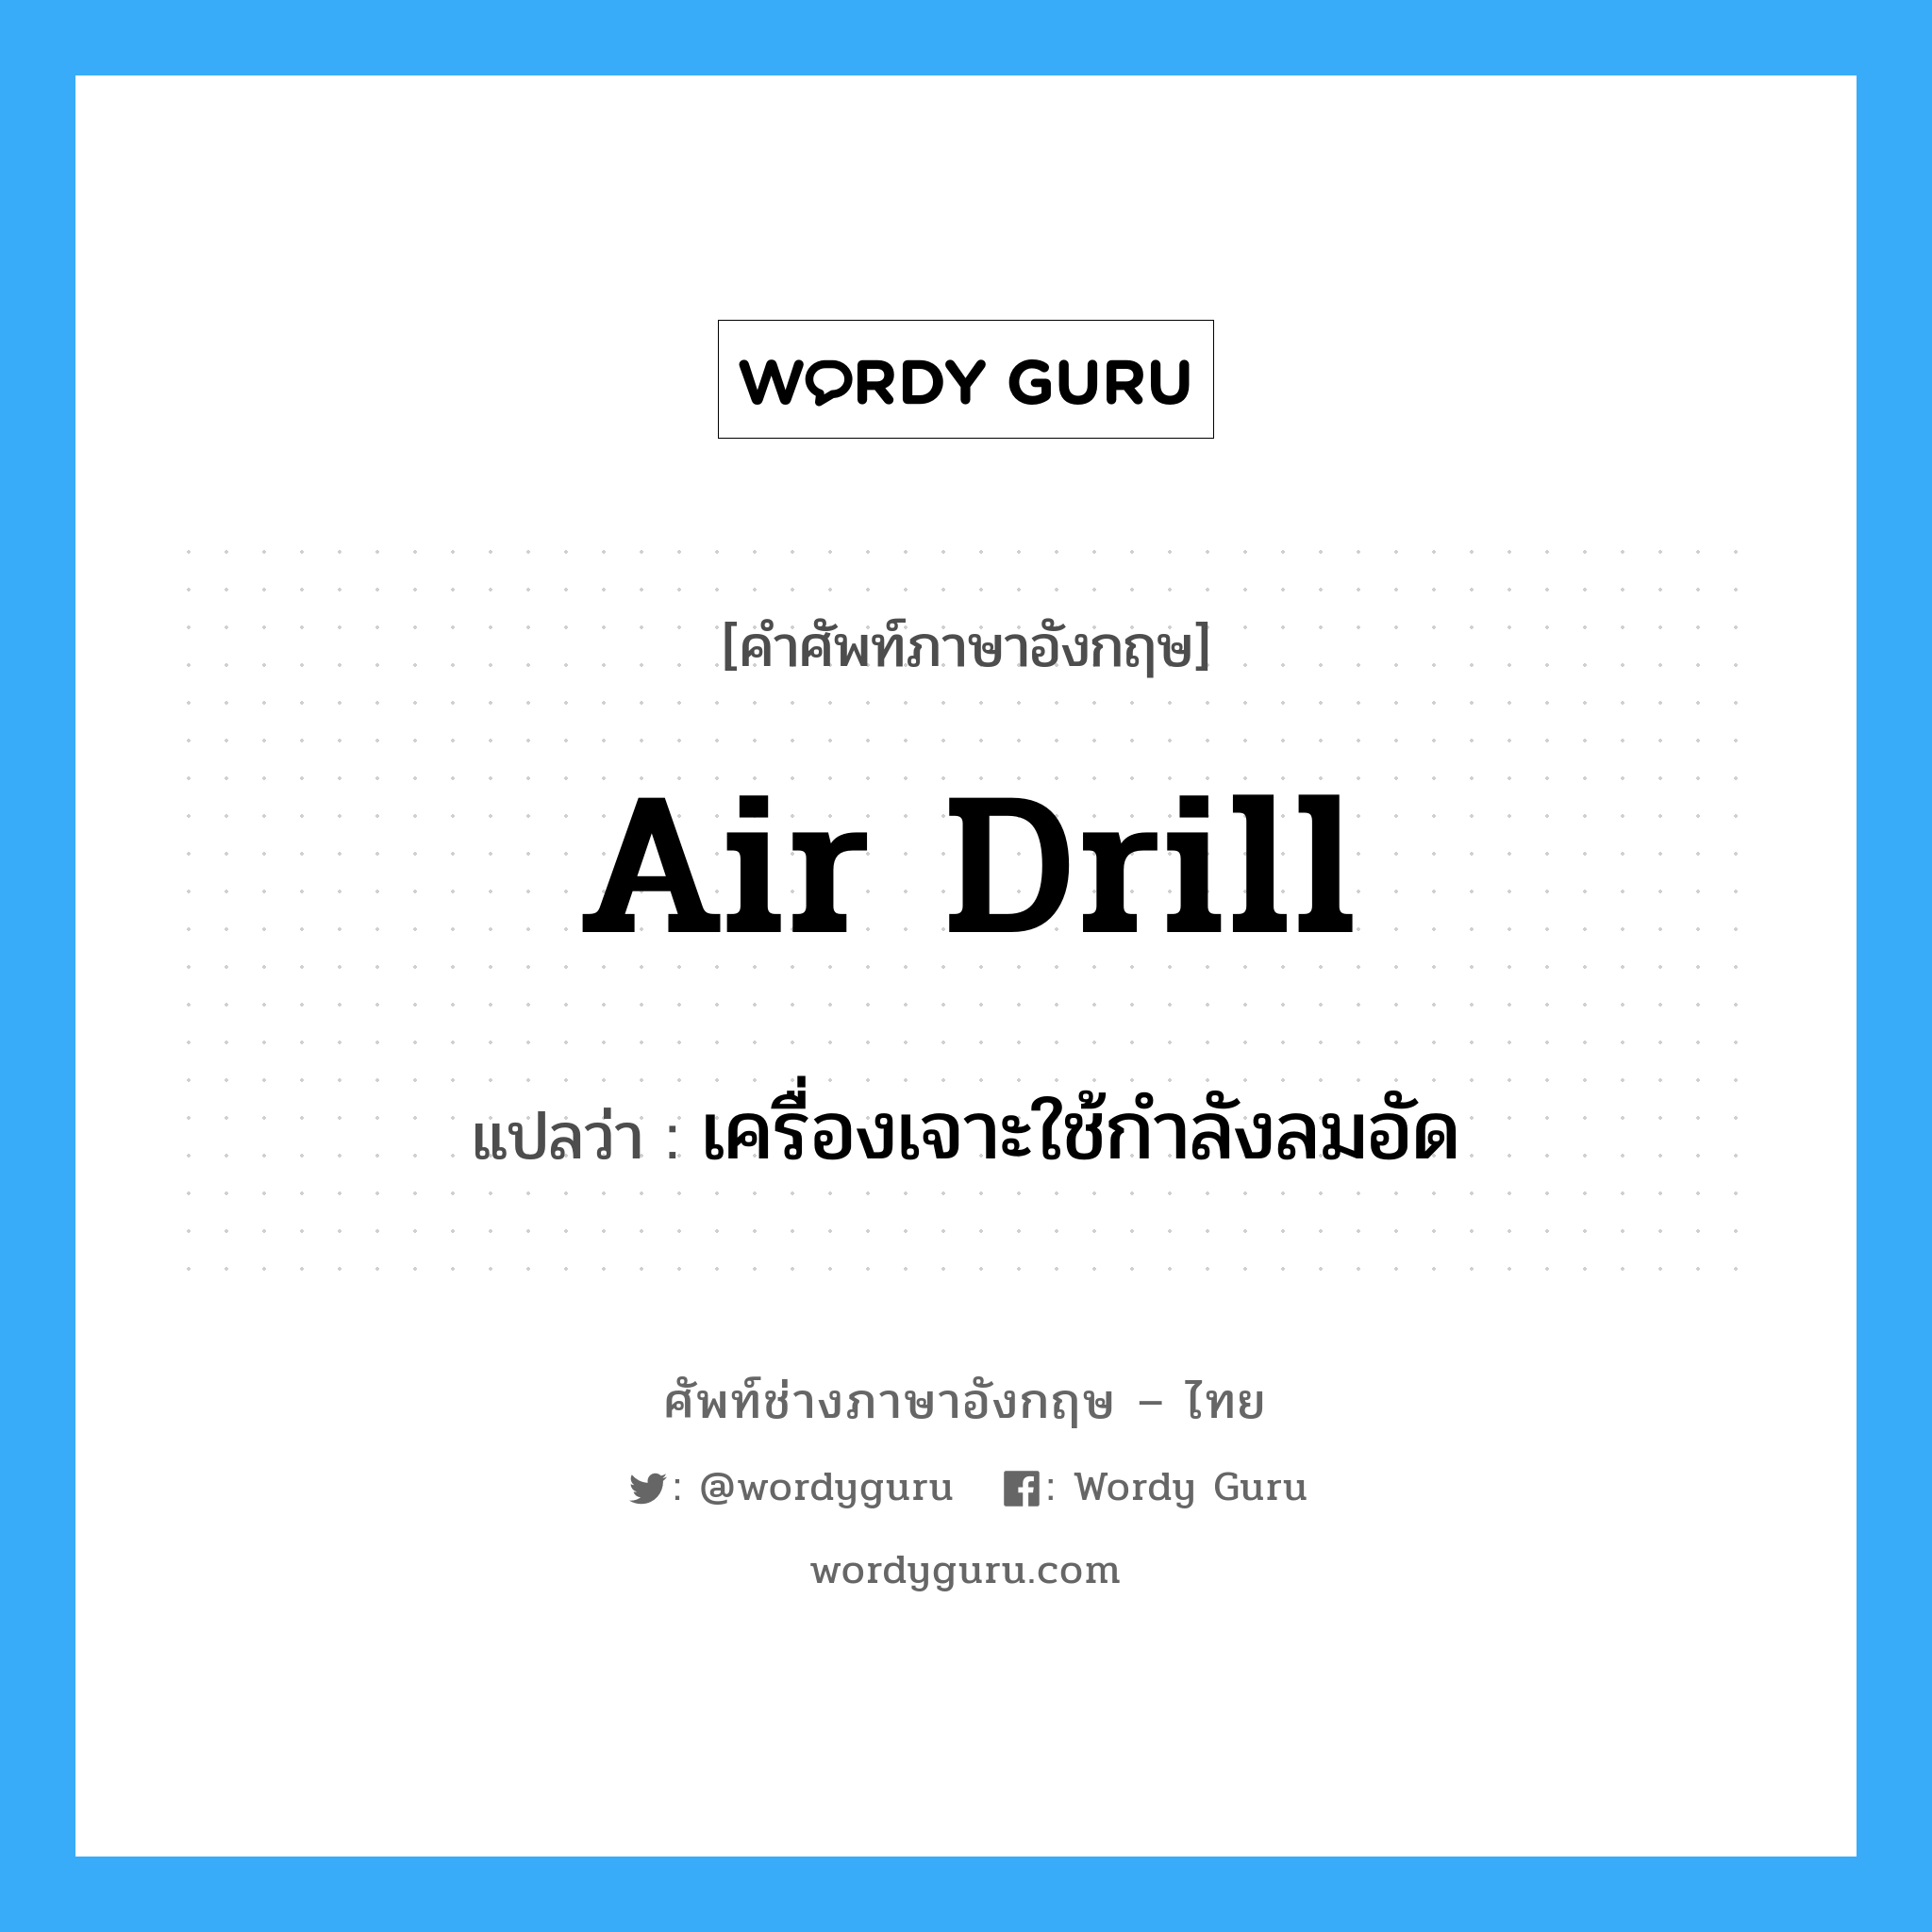 air drill แปลว่า?, คำศัพท์ช่างภาษาอังกฤษ - ไทย air drill คำศัพท์ภาษาอังกฤษ air drill แปลว่า เครื่องเจาะใช้กำลังลมอัด